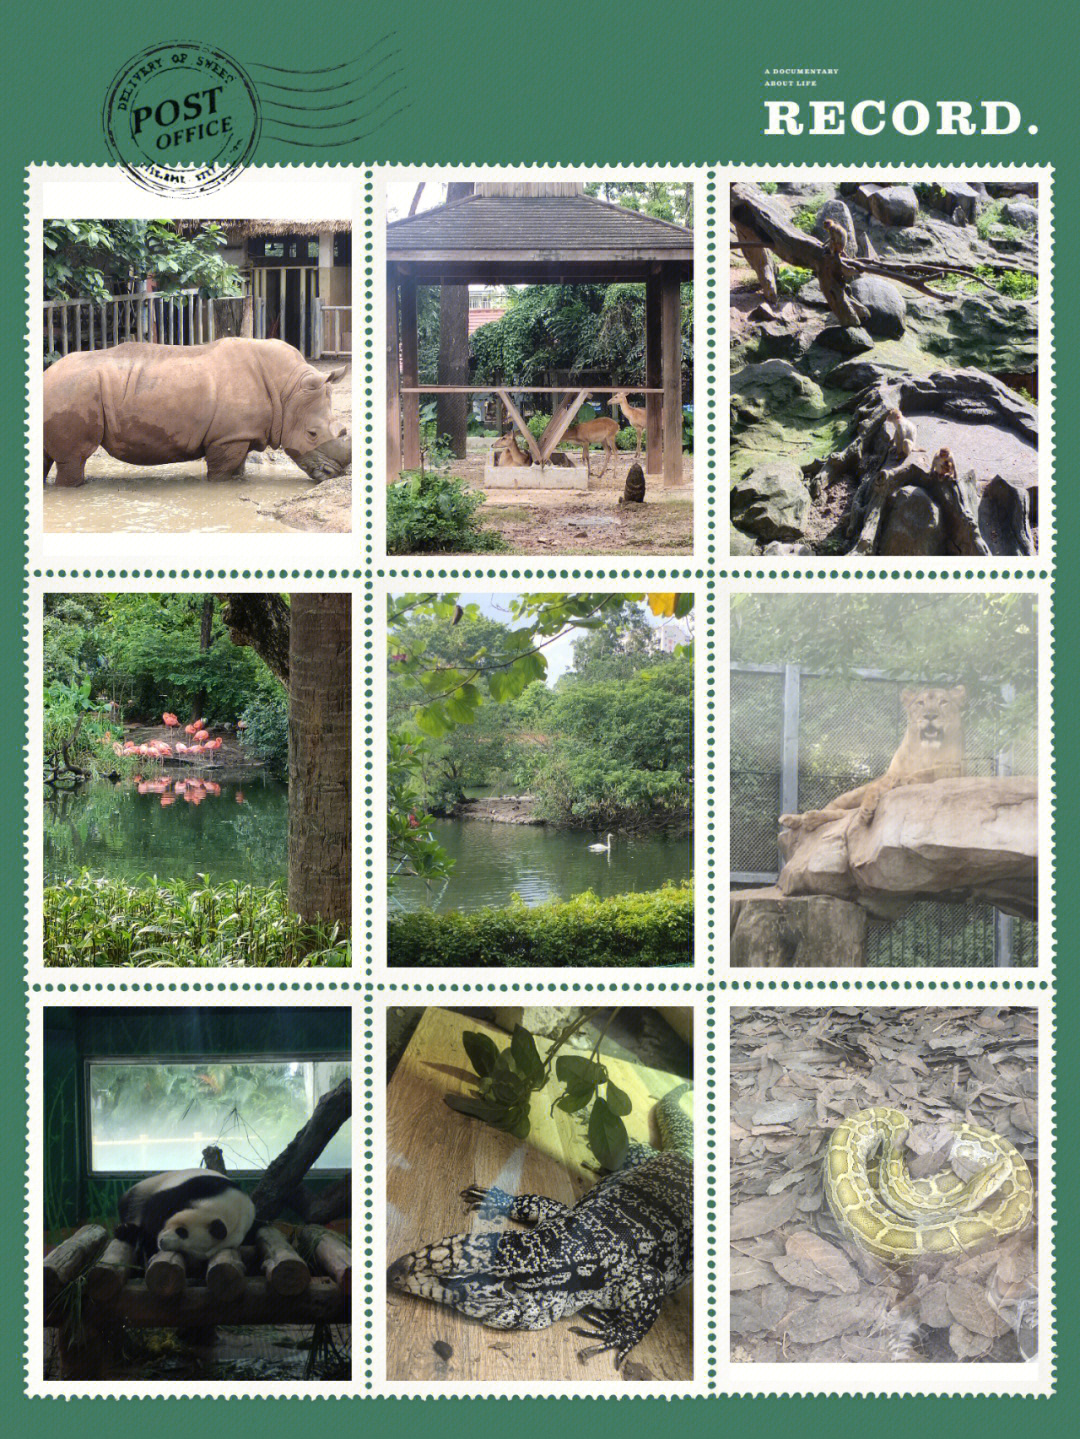 广州动物园动物名单图片